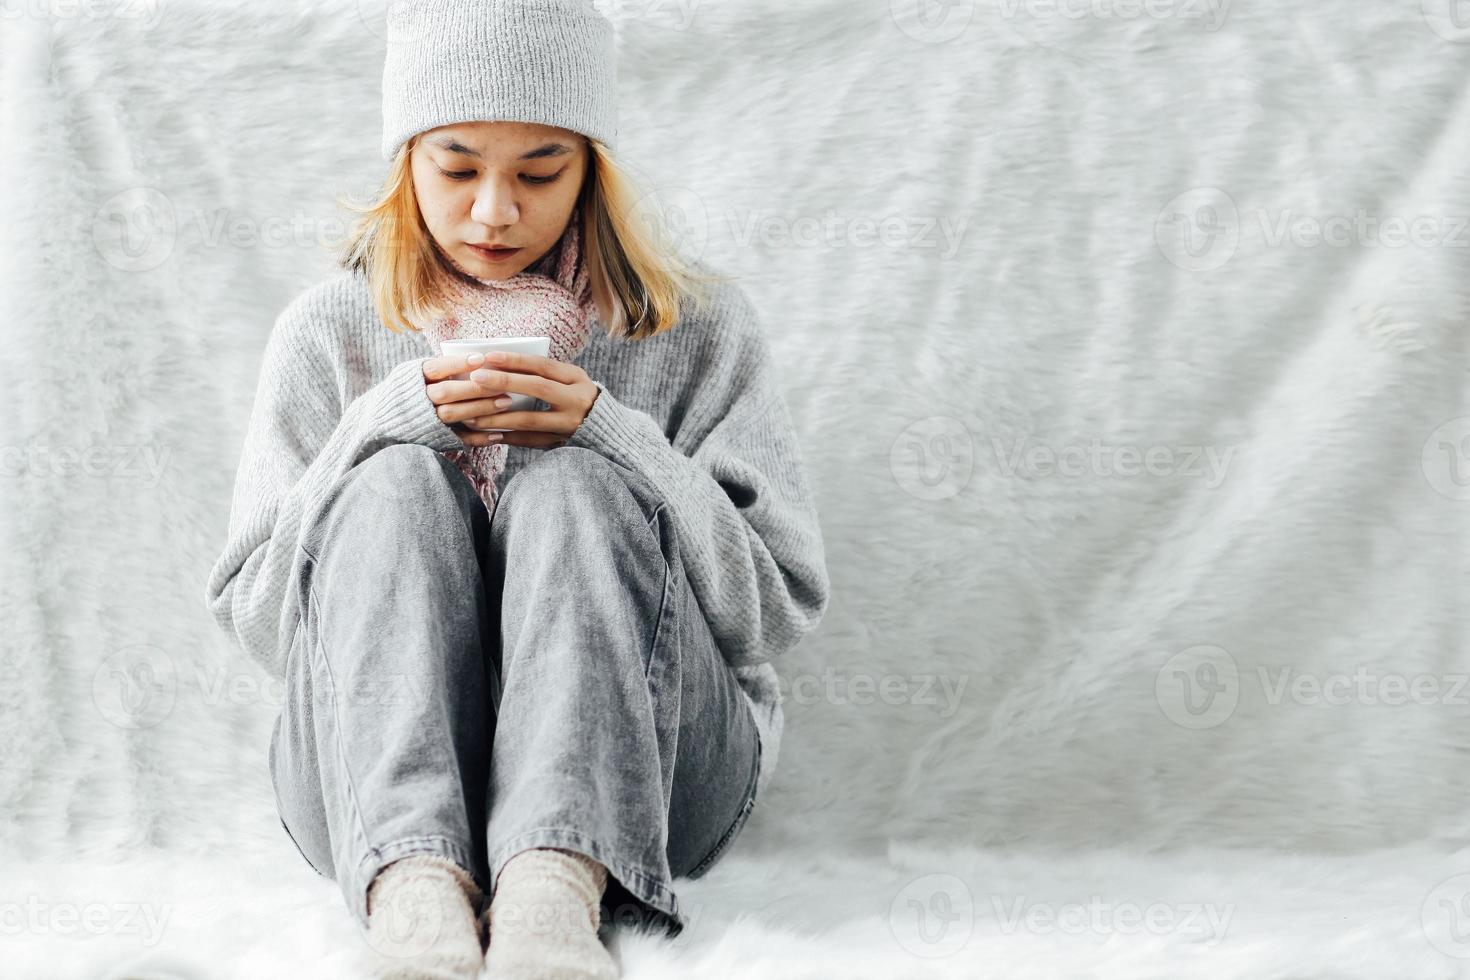 een meisje met winterkleren die in de winter thuis genieten van een kopje warme drank foto